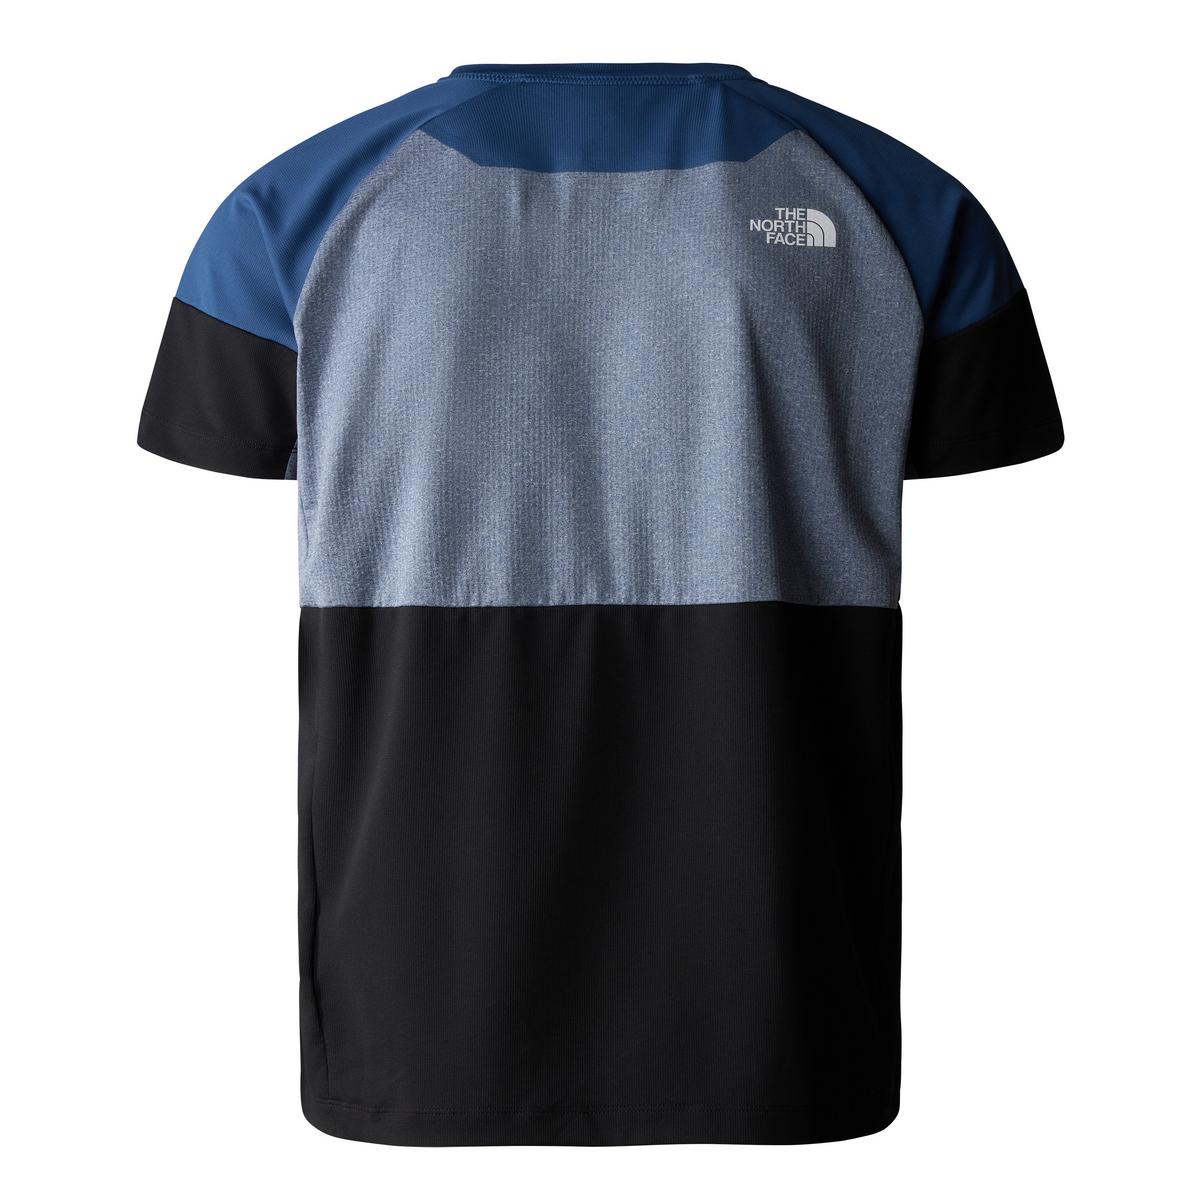 The North Face Men's Bolt Tech T-Shirt - Blue